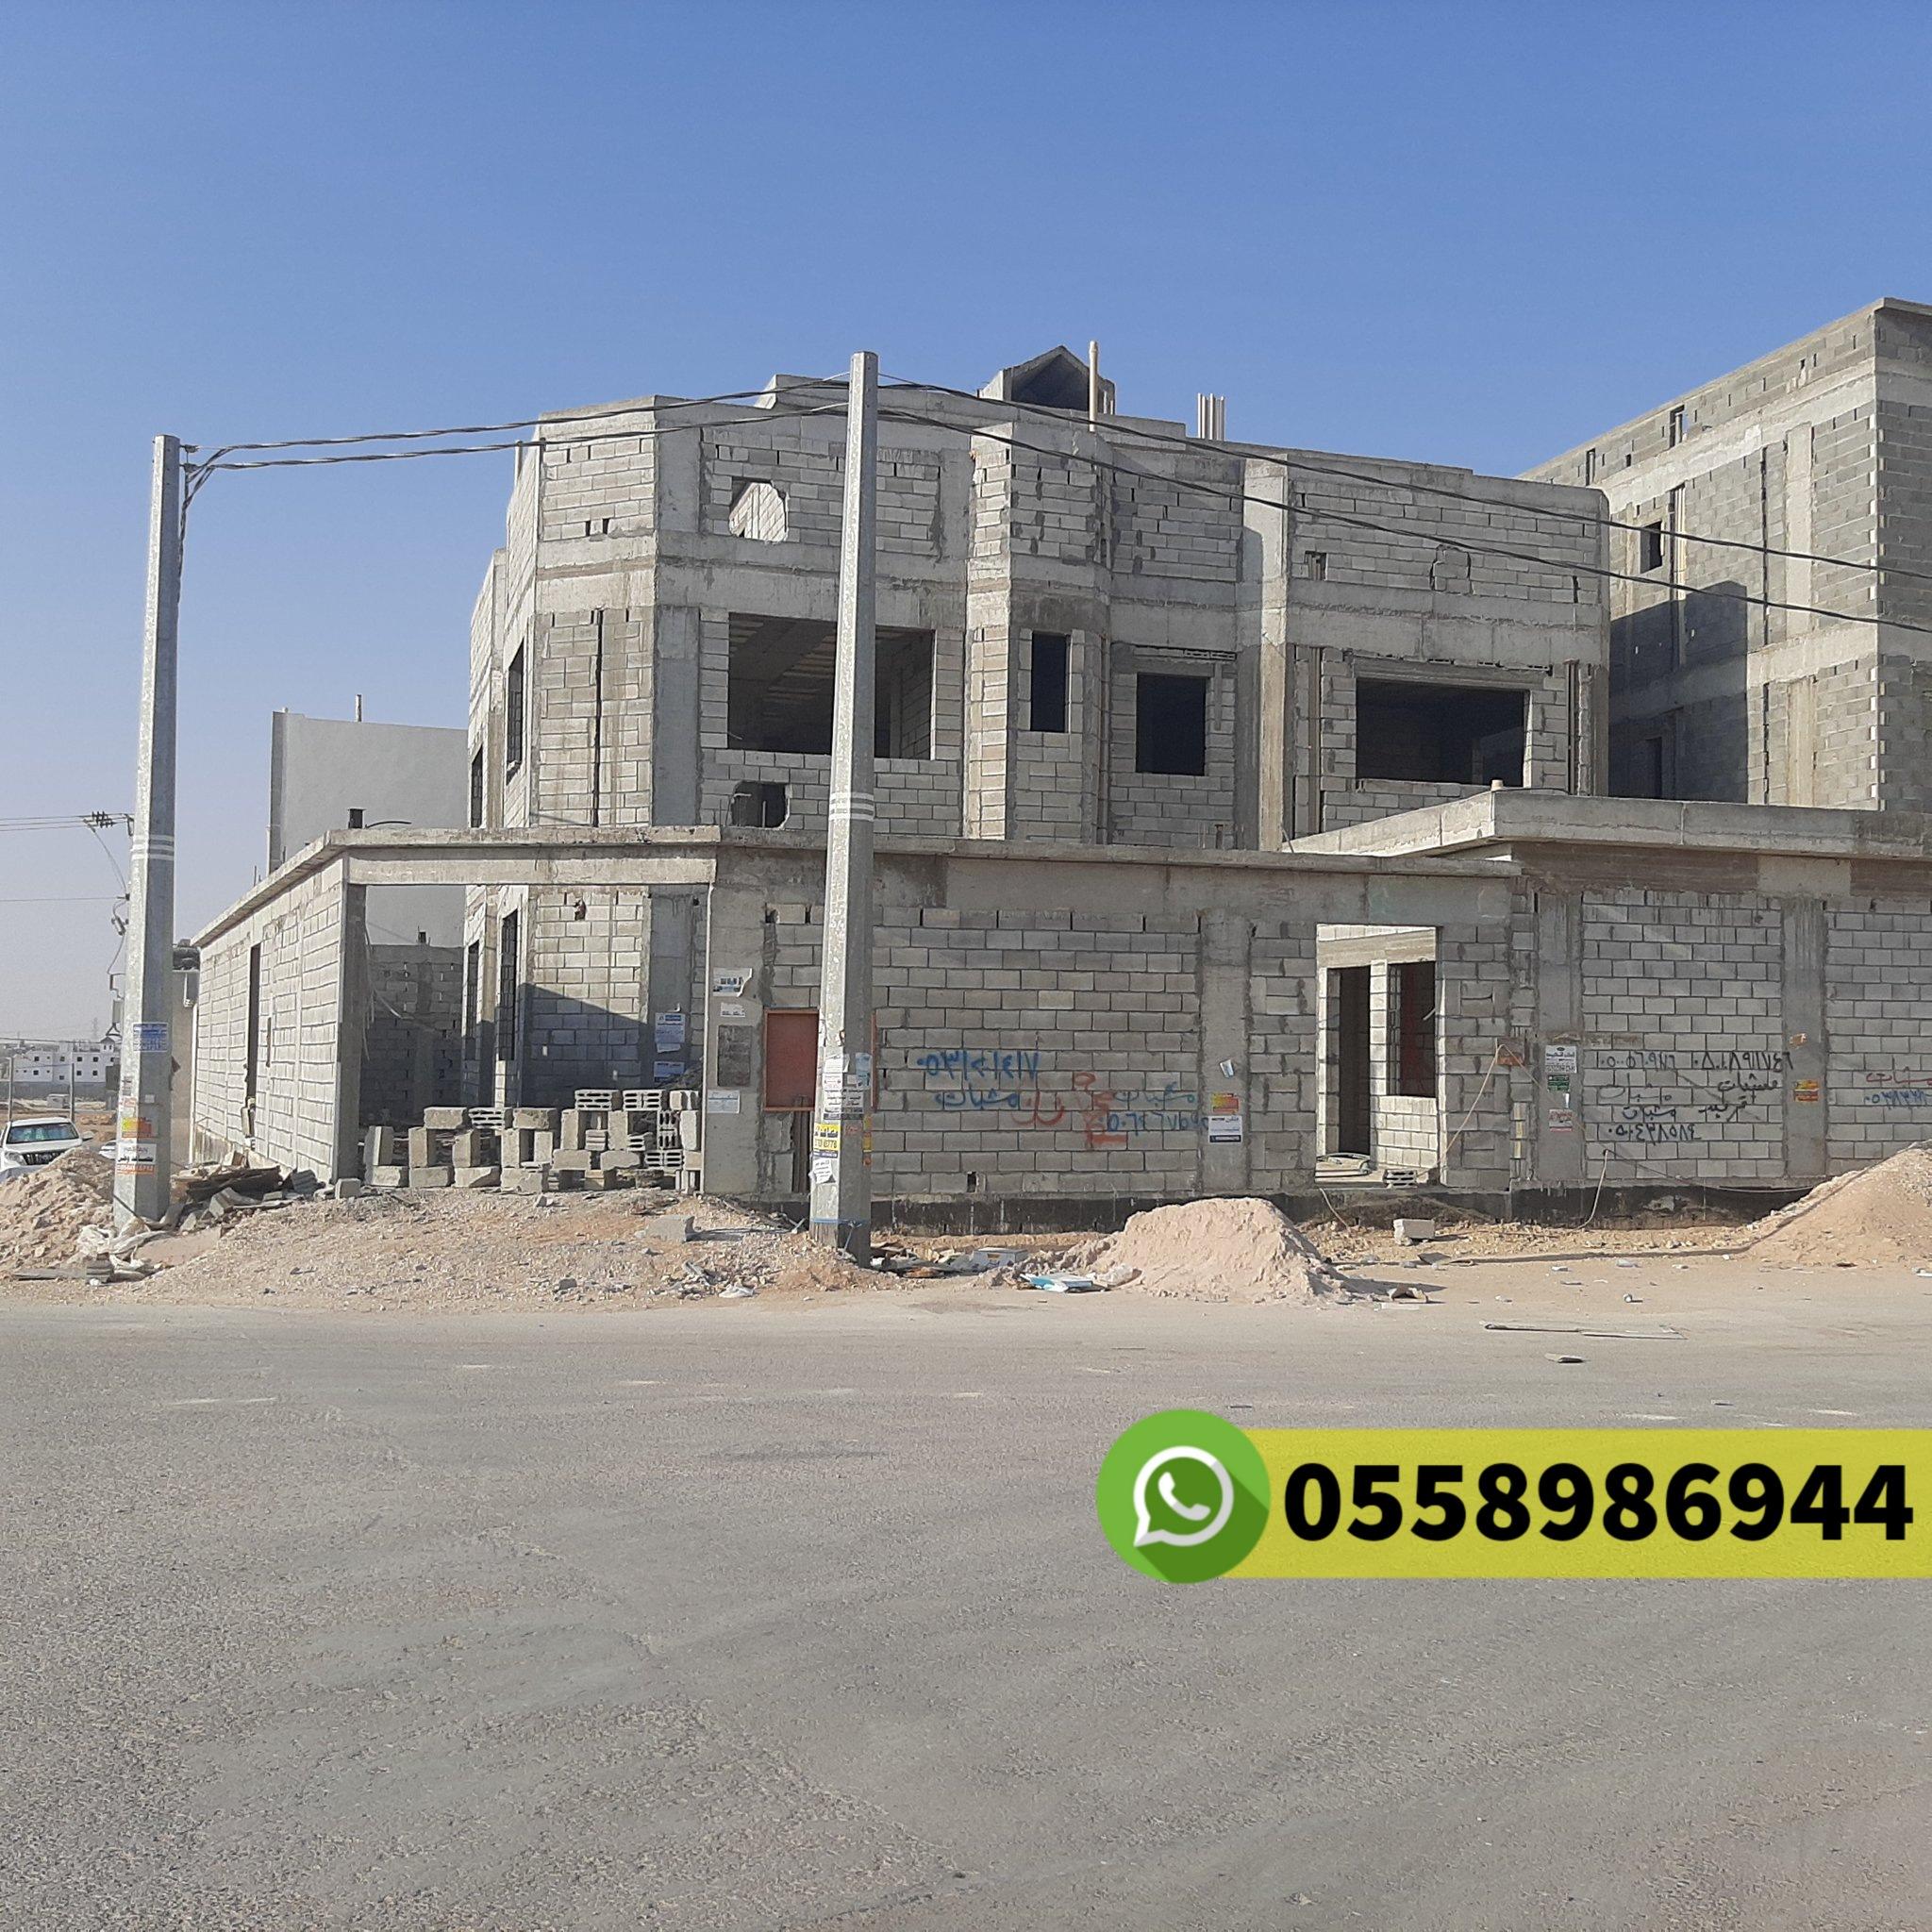 مقاول معماري في حي البساتين جدة جوال 0558986944 613719945